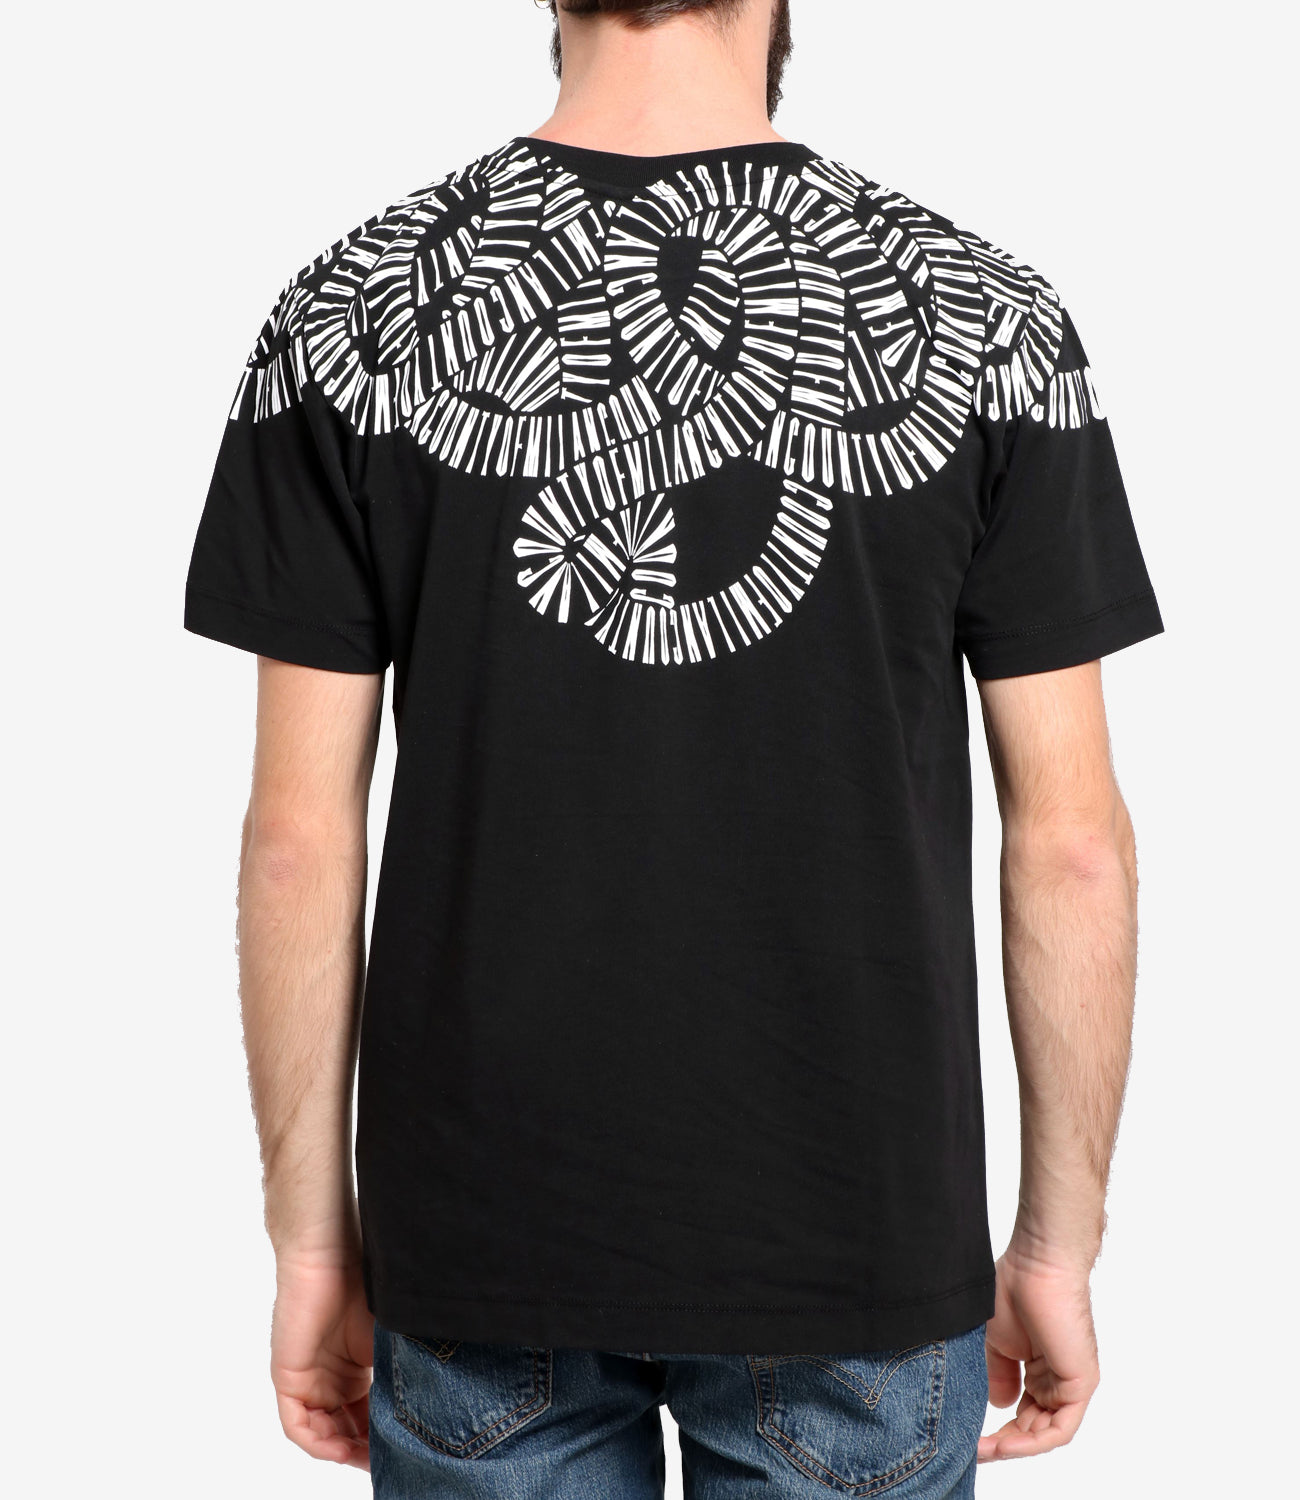 Marcelo Burlon | T-Shirt Snake Wings Black and White